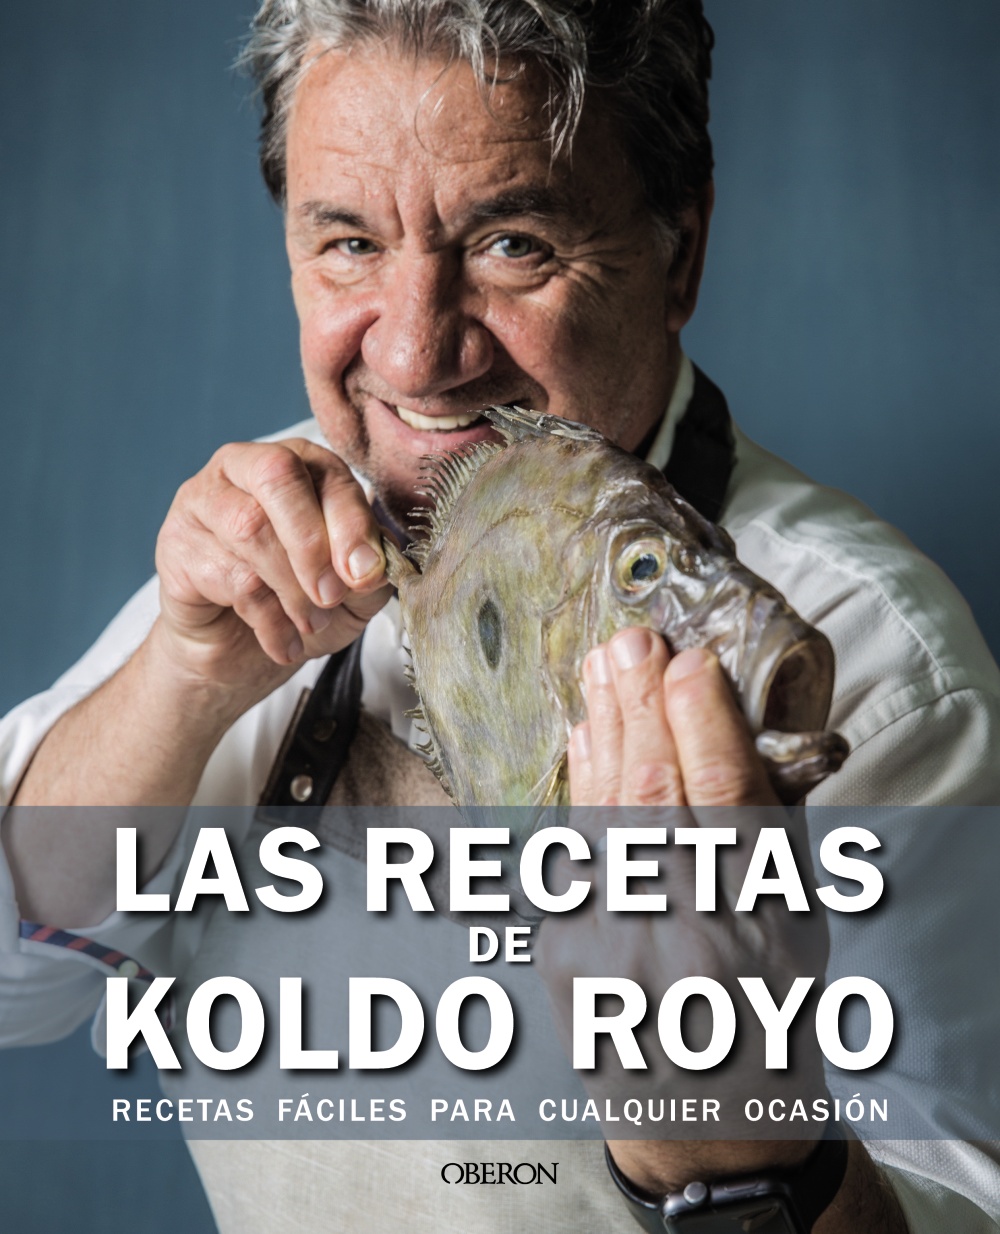 Las recetas de Koldo Royo -   